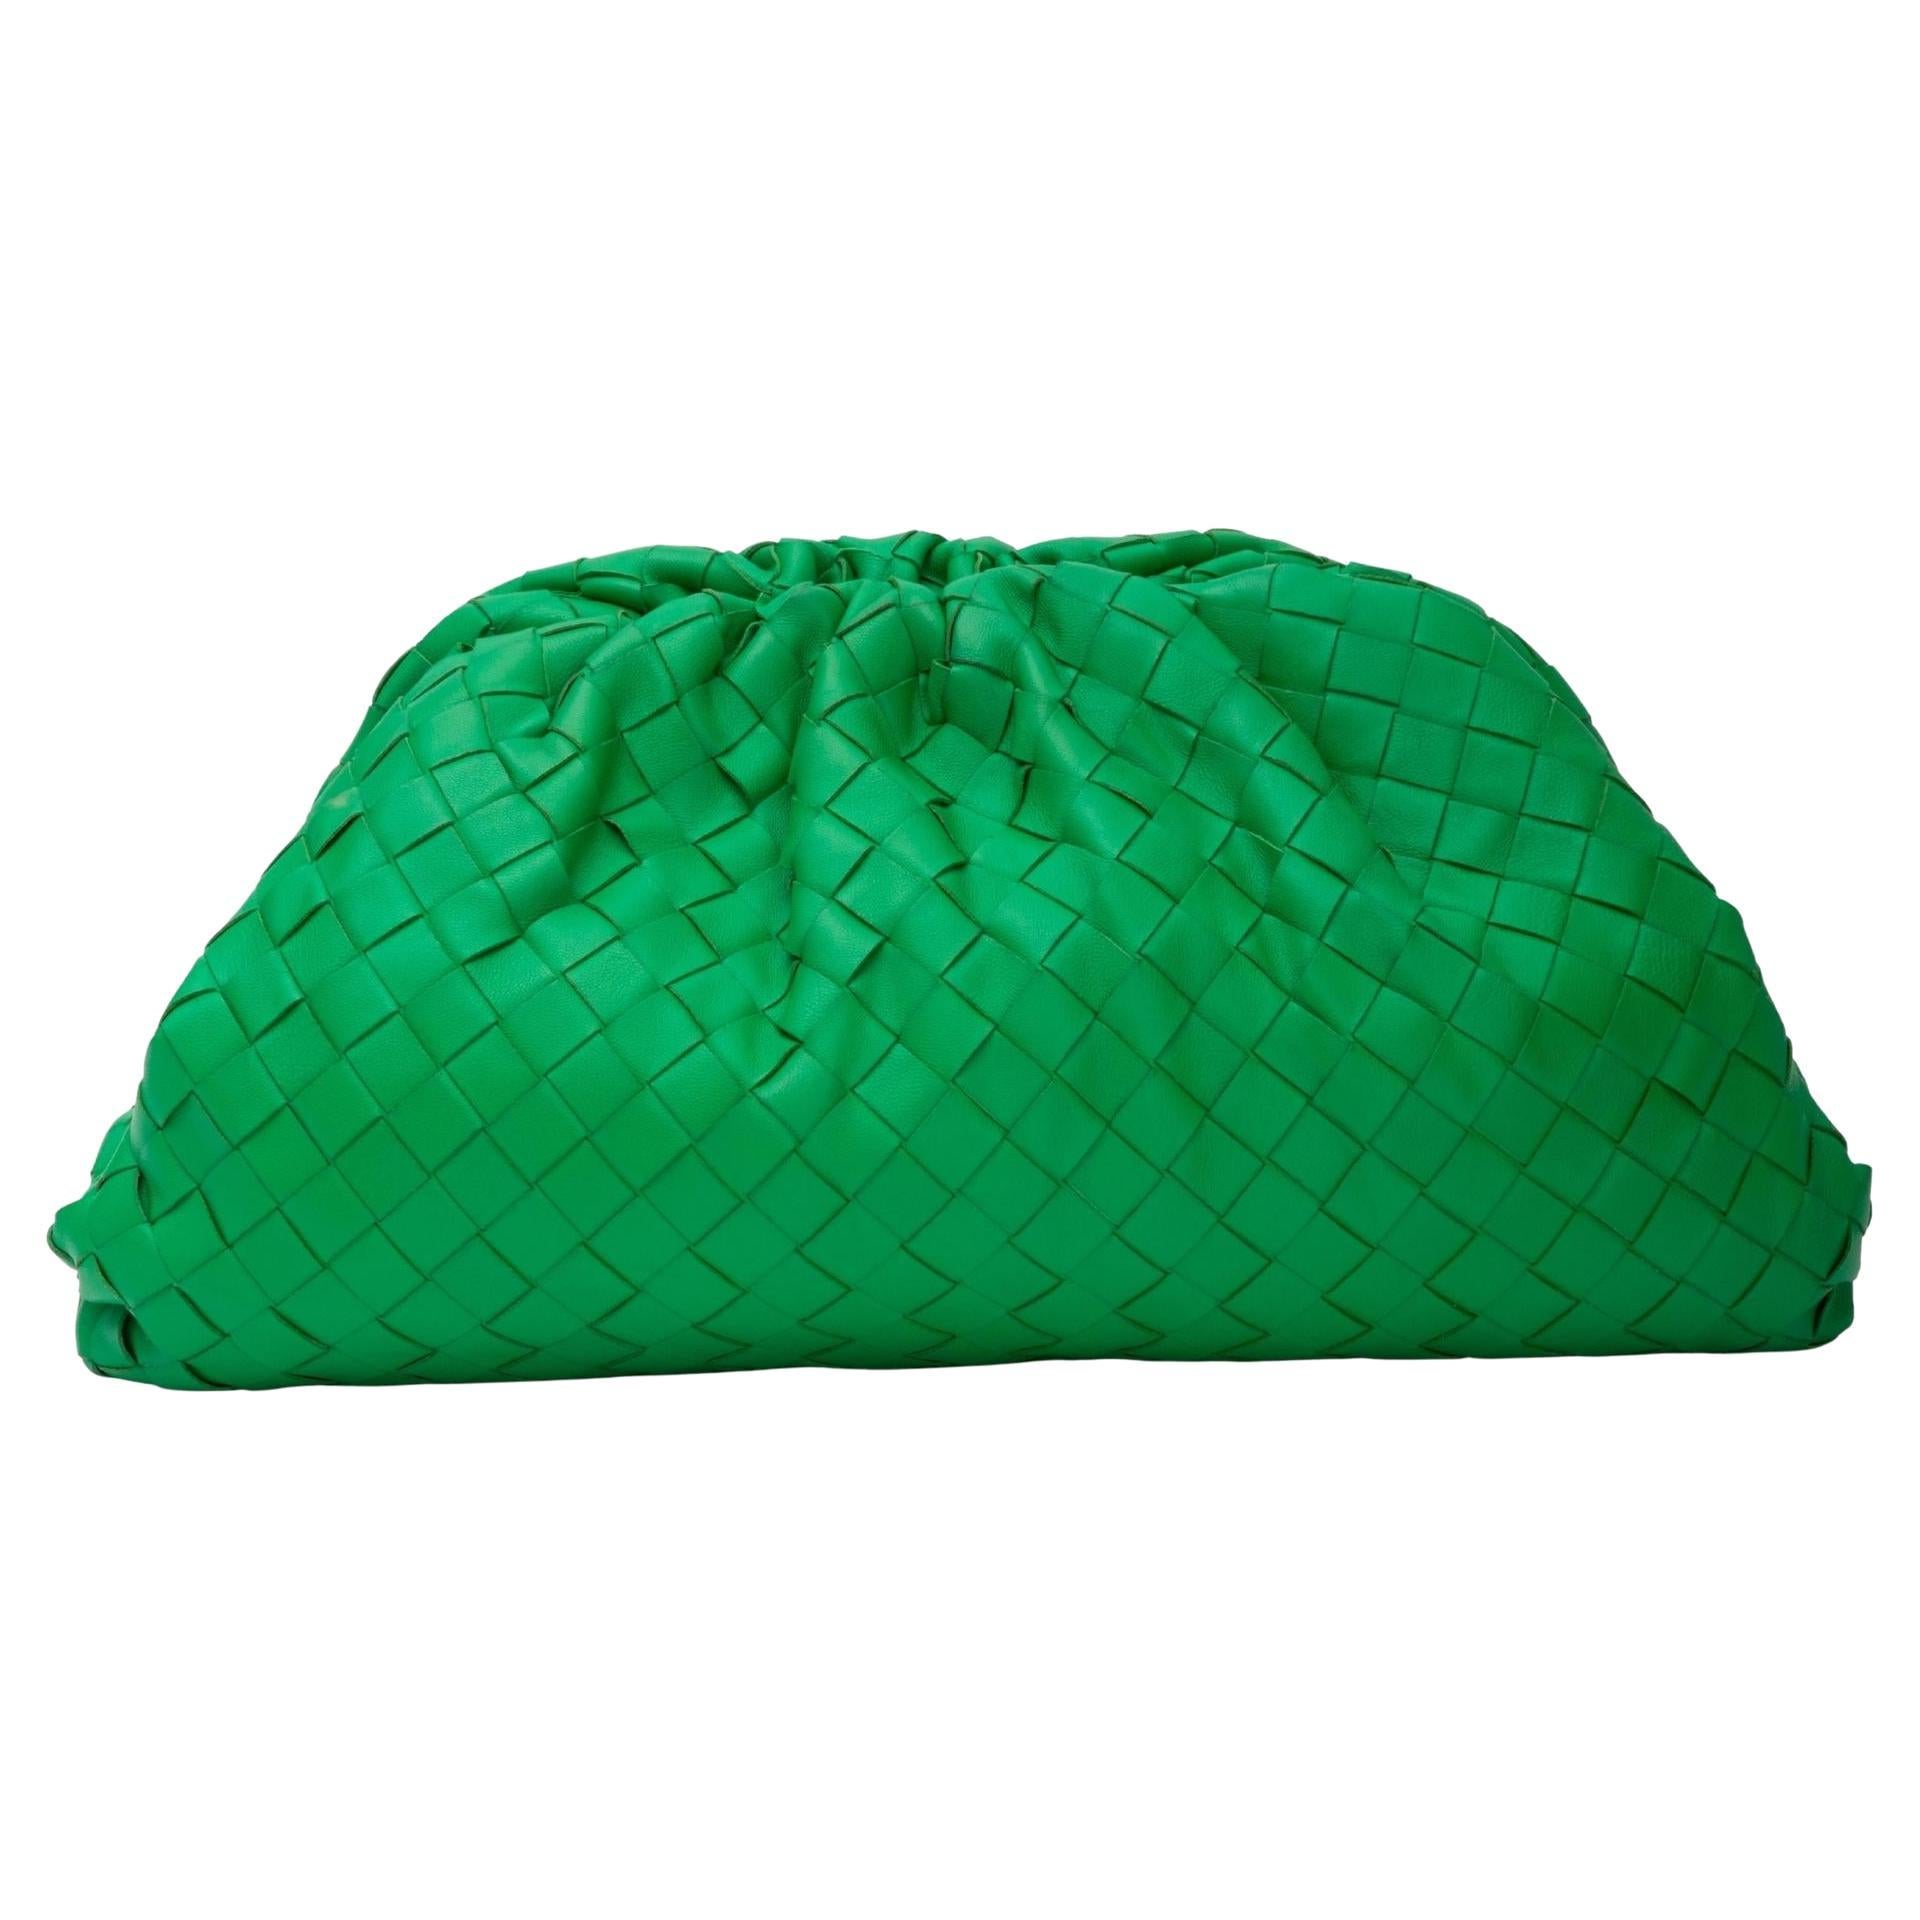 Bottega Veneta Green Intrecciato Leather The Pouch Clutch Bag